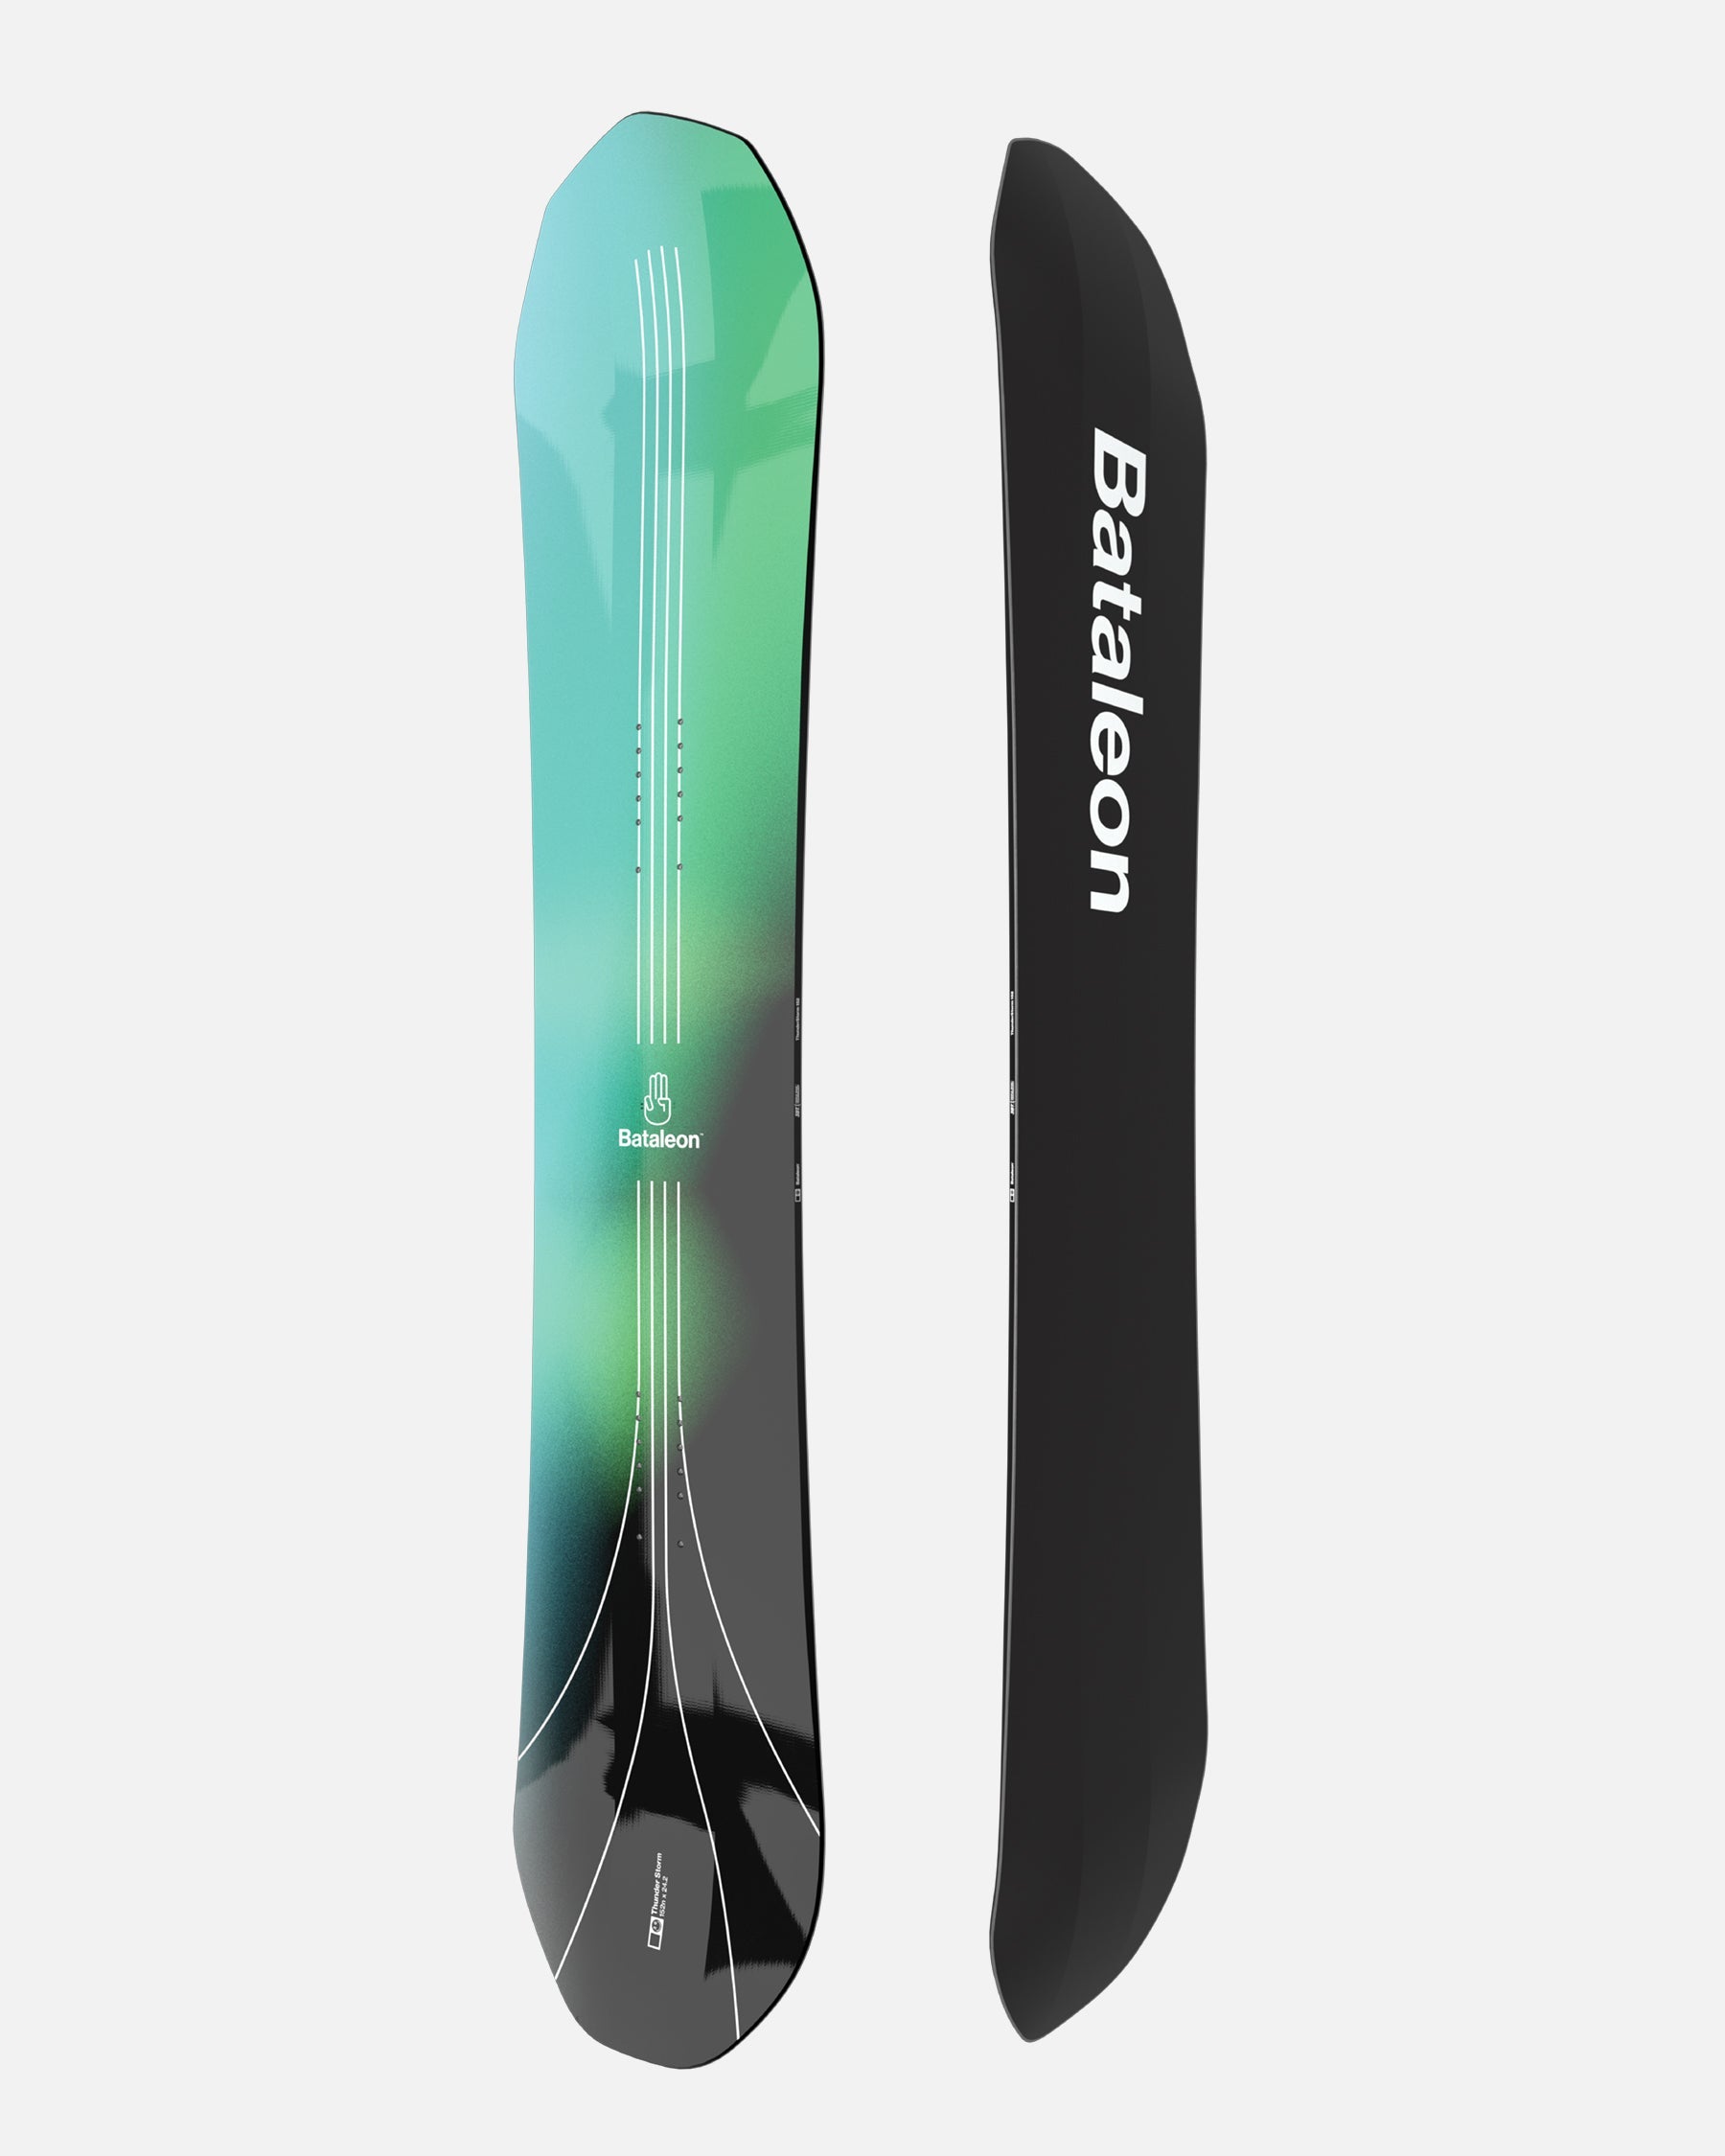 Bataleon snowboards – Bataleon NA